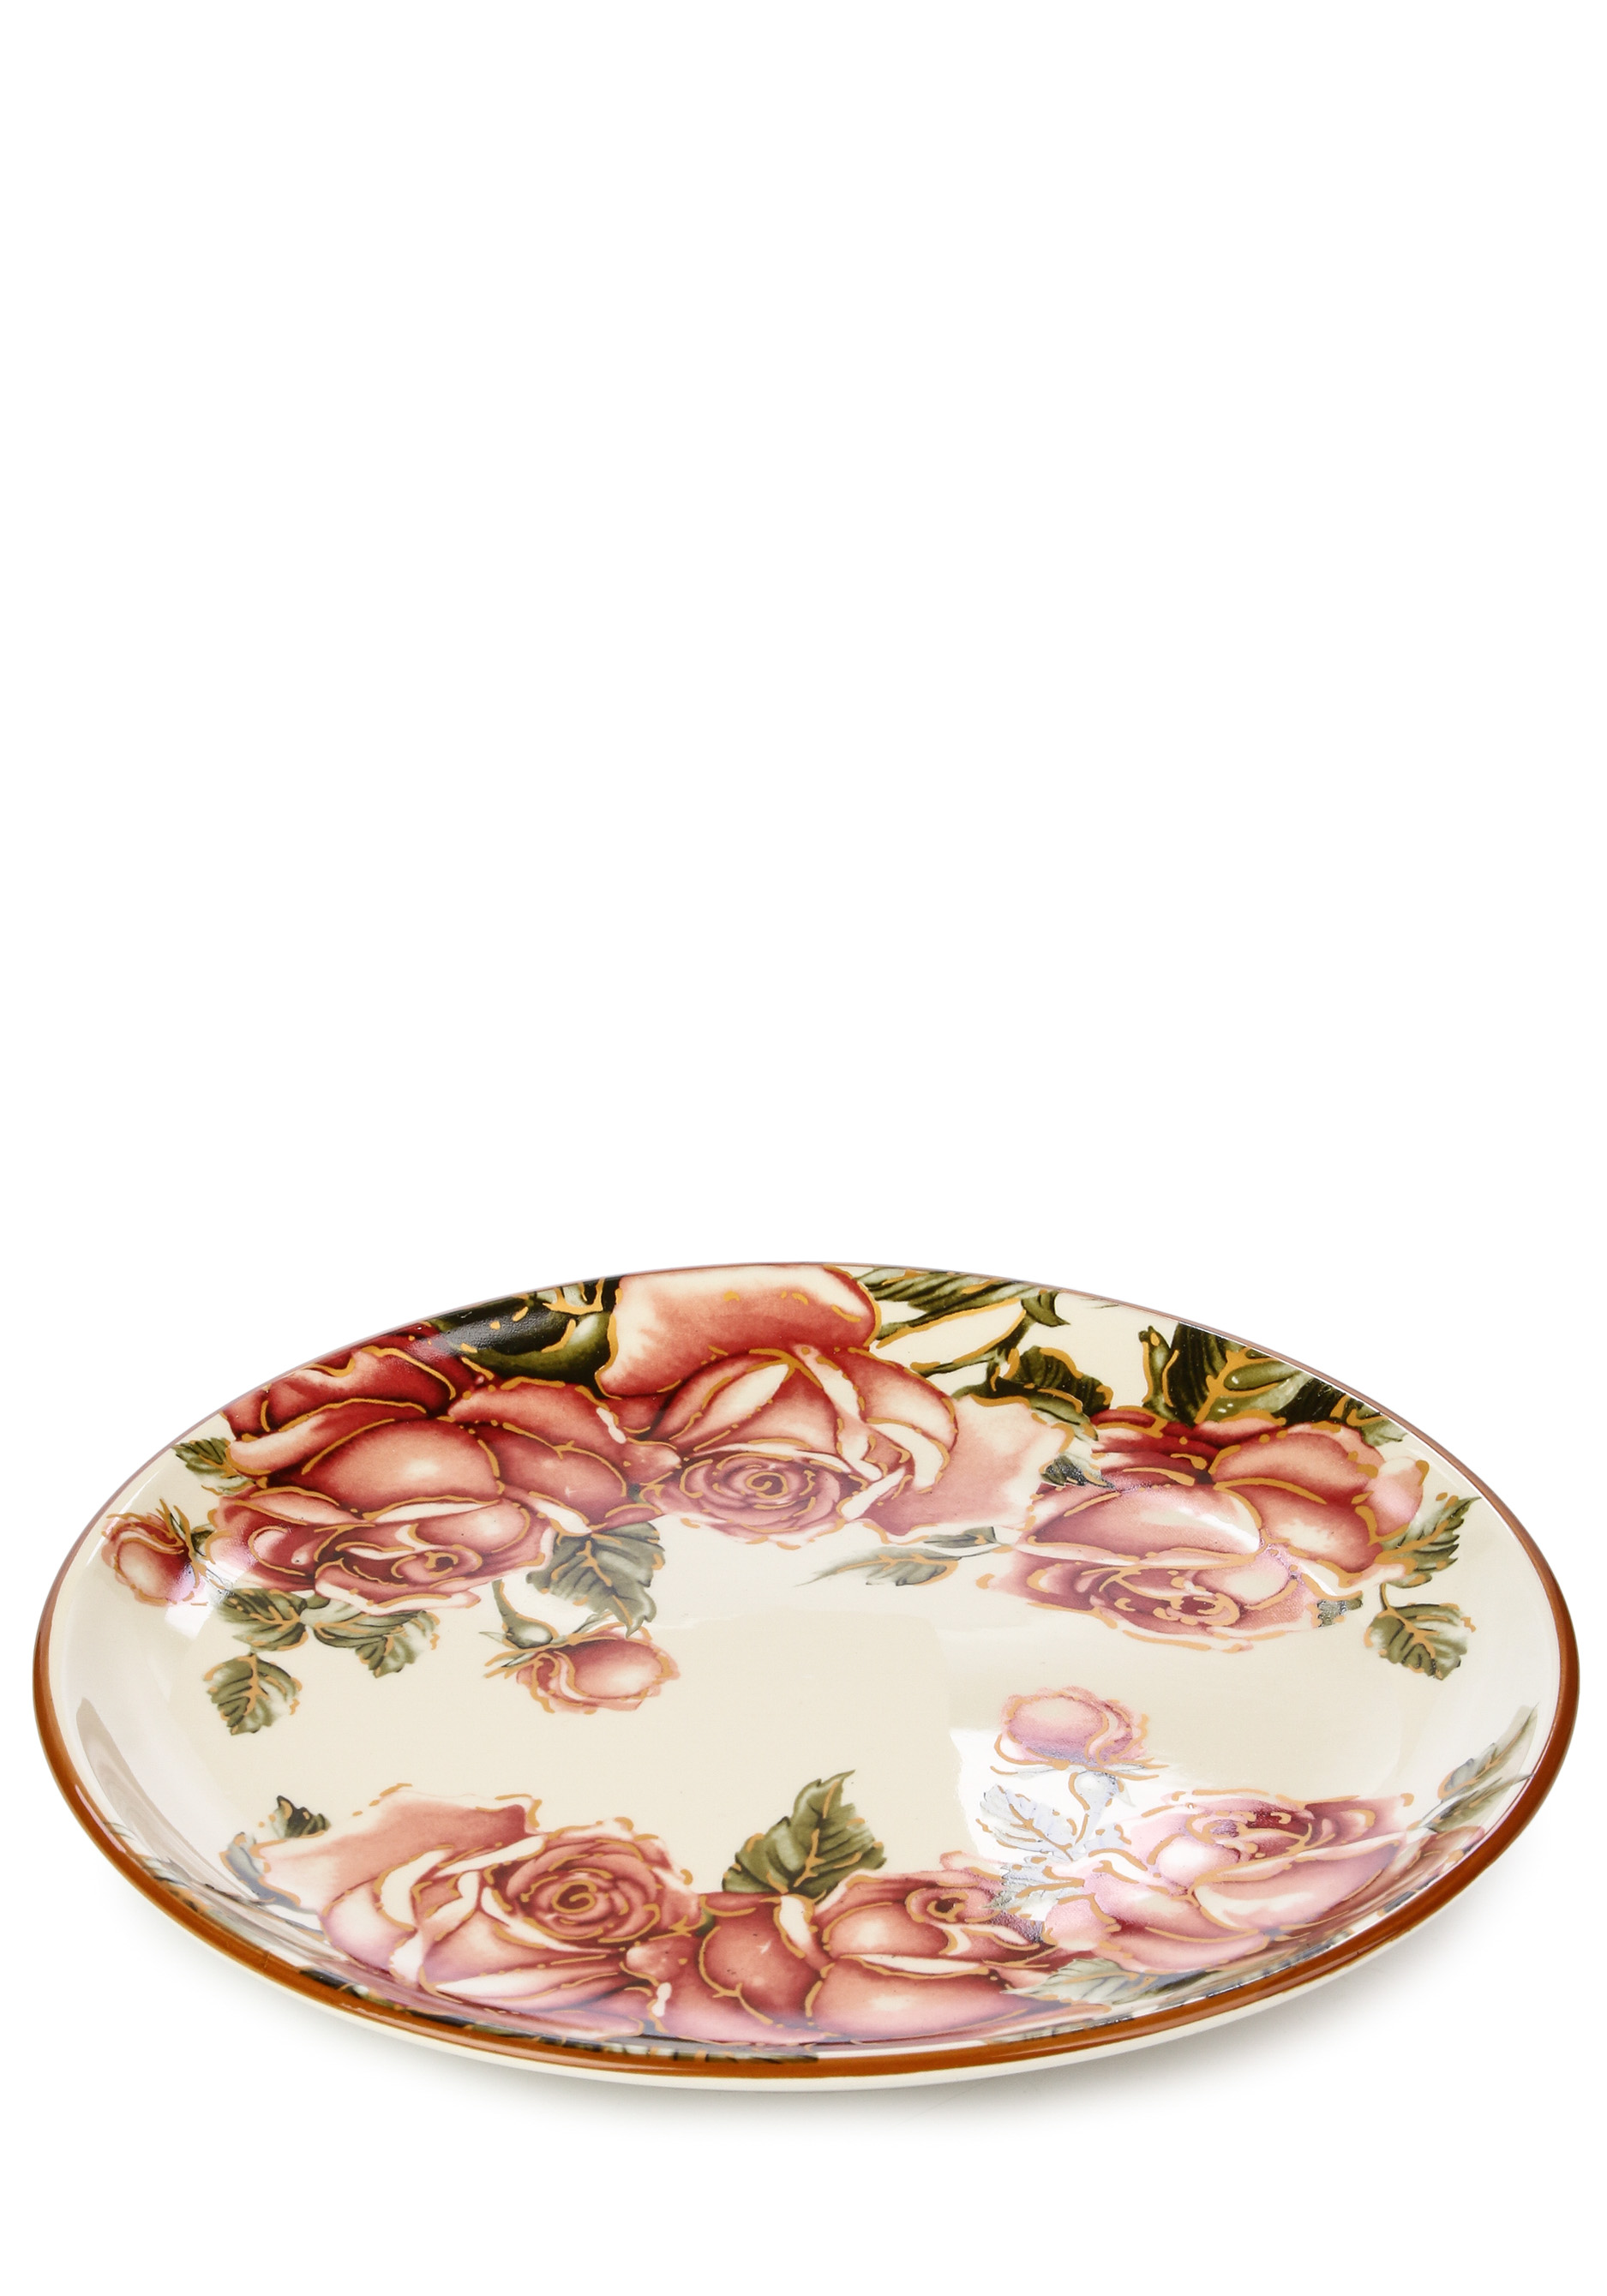 Тарелка сервировочная "Корейская роза" AGNESS, цвет бежевый, размер 21 см - фото 6